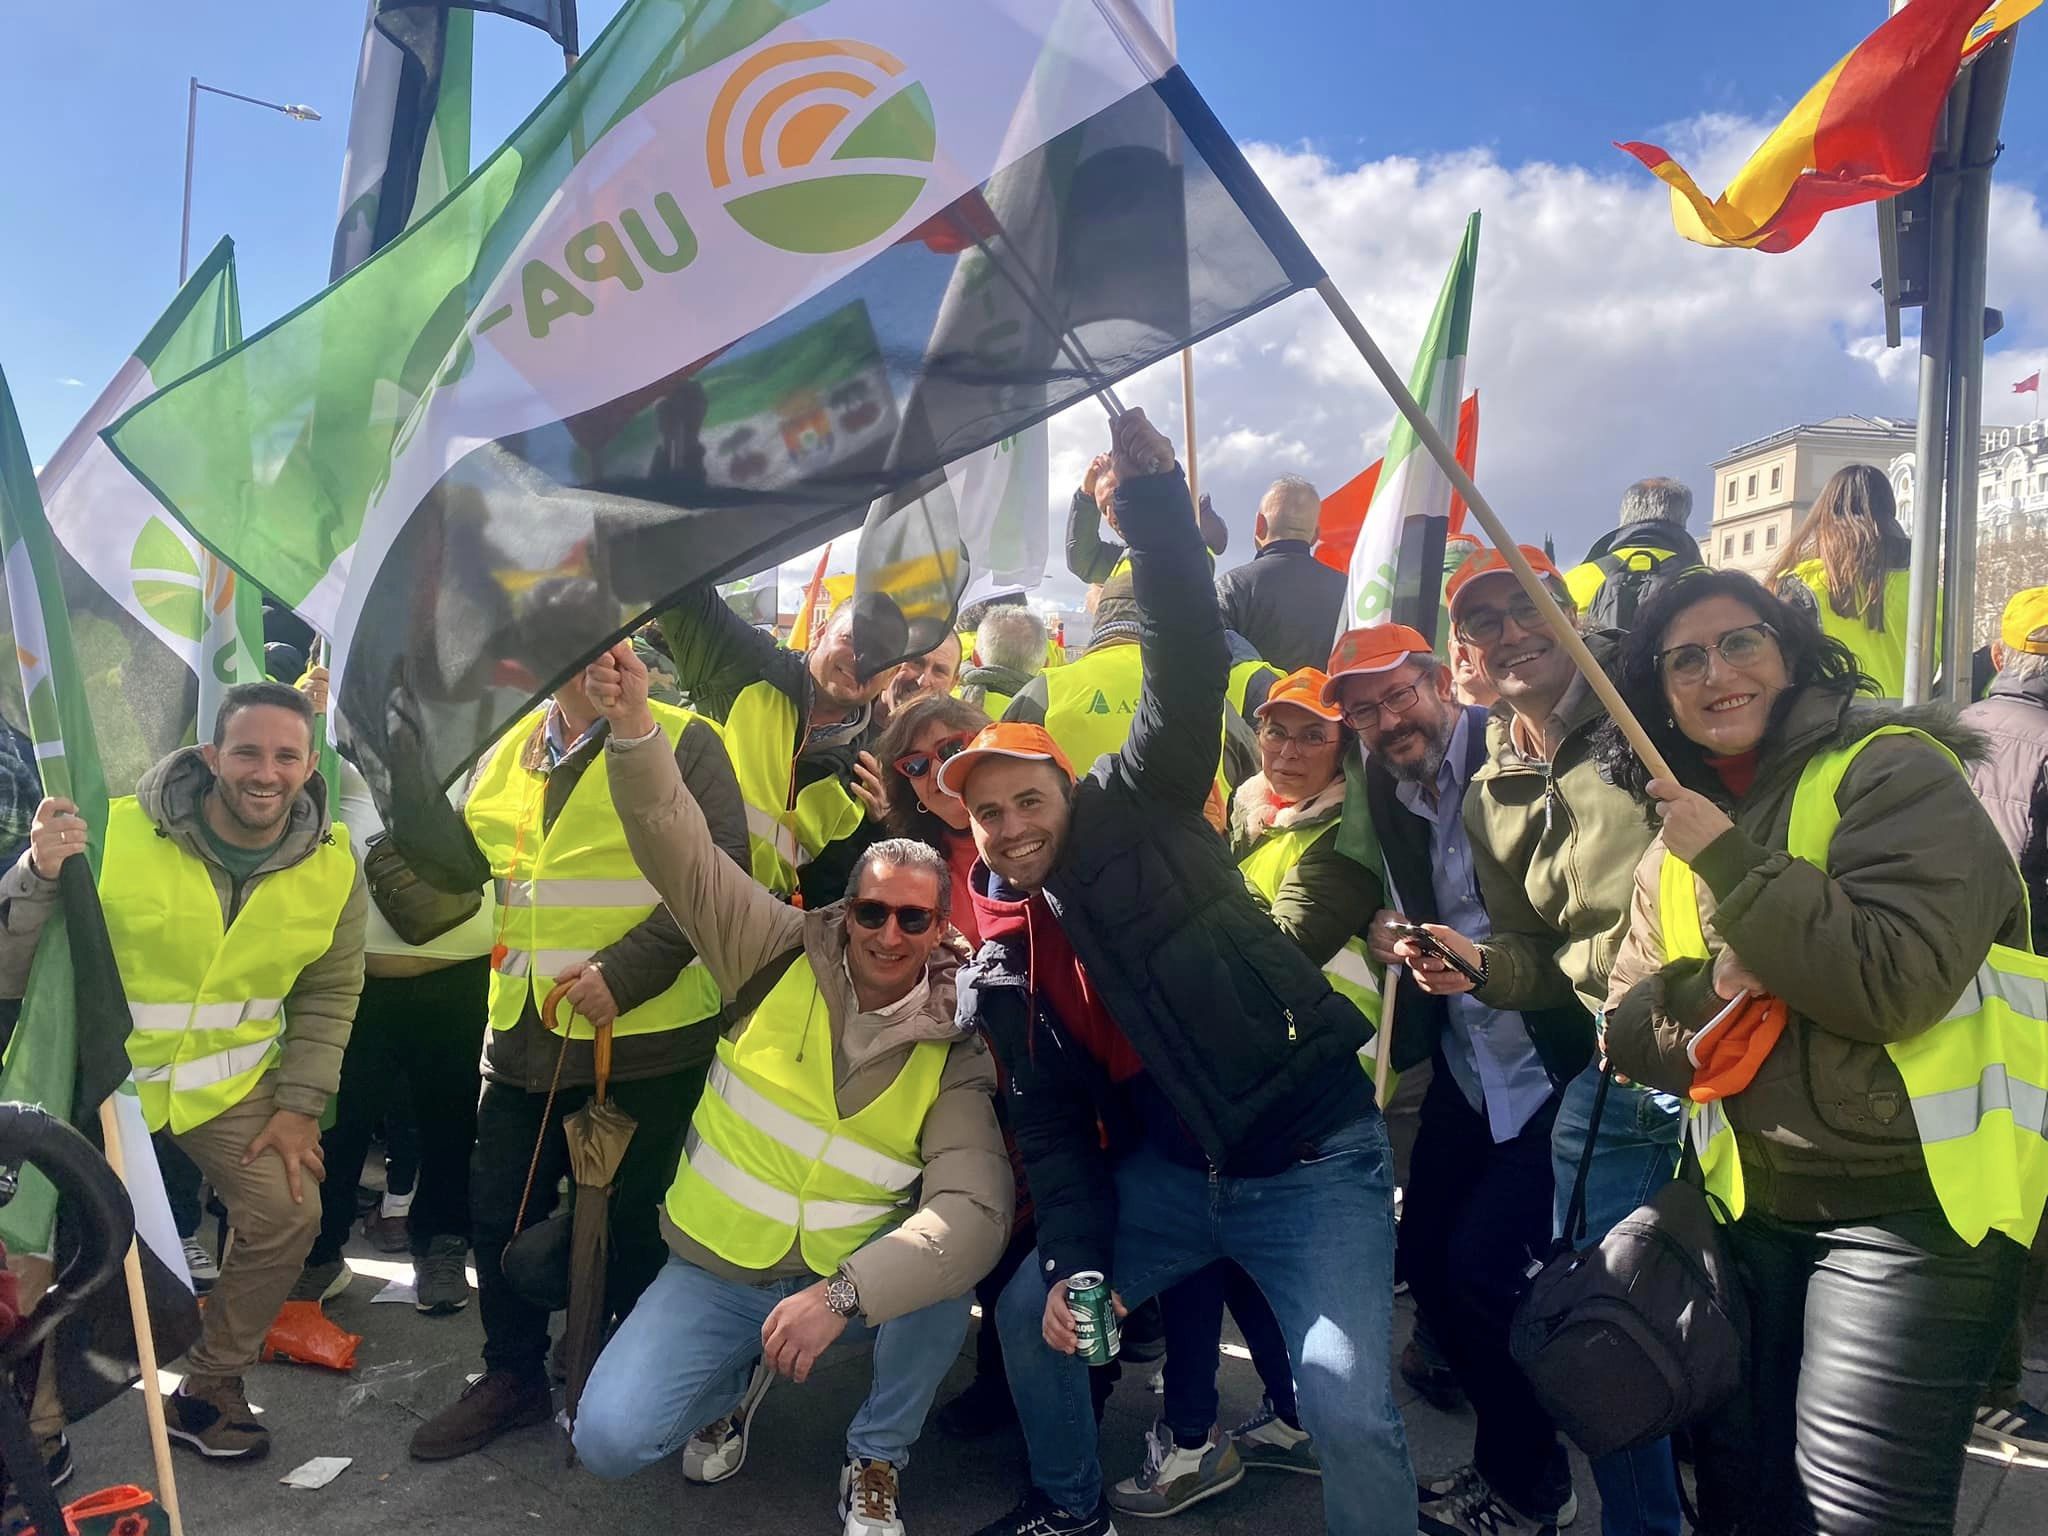 Imágenes de los extremeños manifestándose en Madrid este lunes